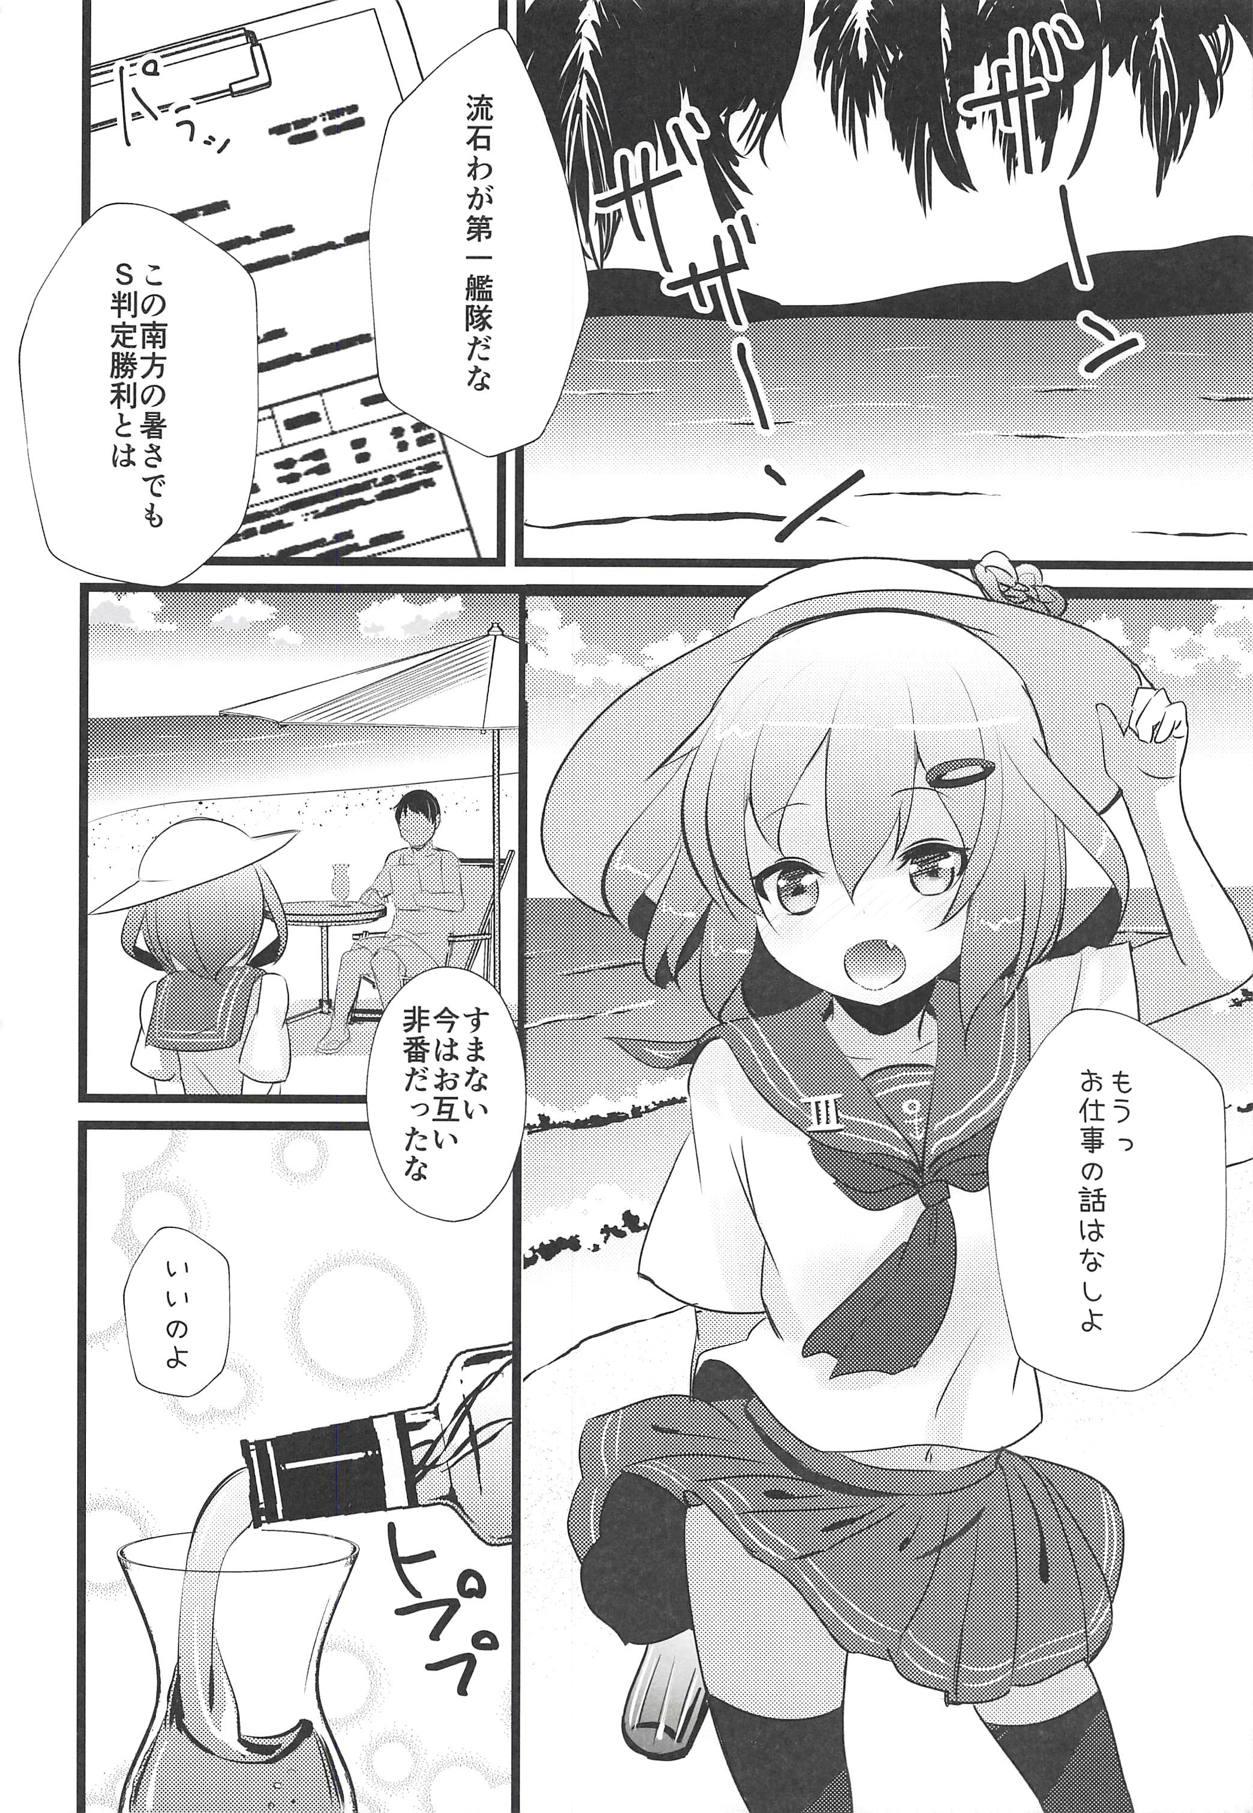 Rubbing Iyashite Ikazuchi-chan 3 - Kantai collection Skinny - Page 5